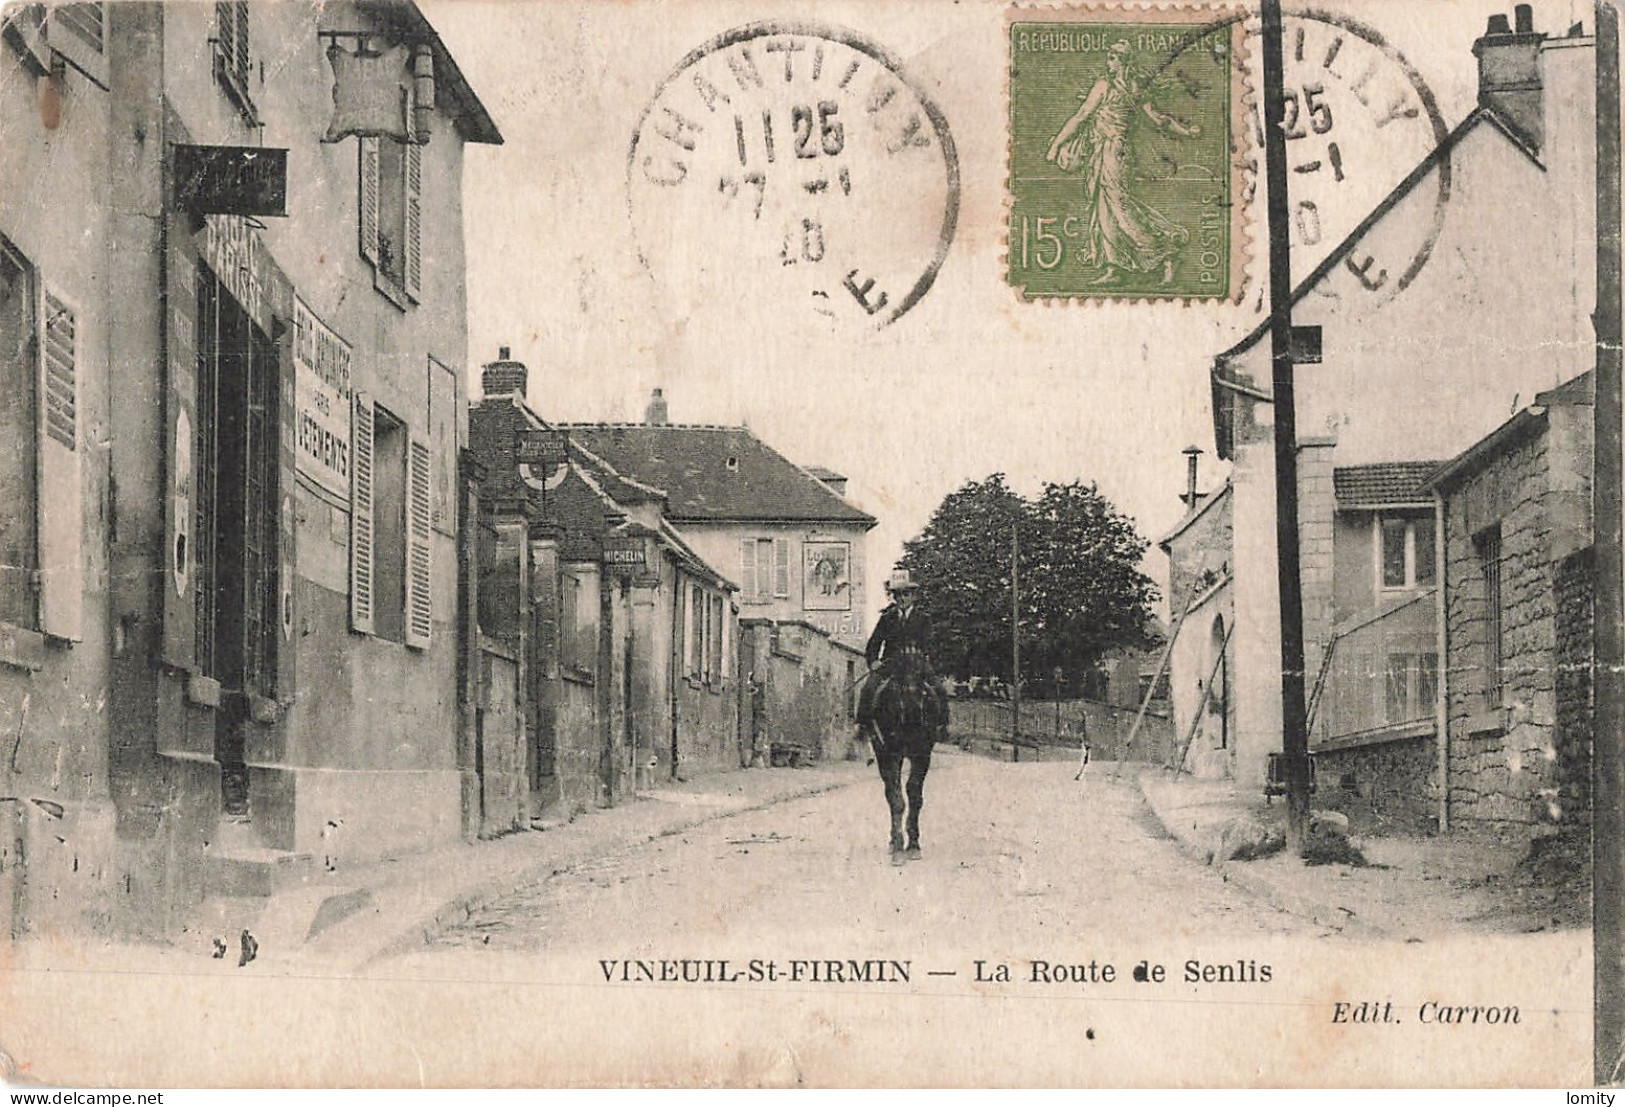 Destockage lot de 14 cartes postales CPA de l' Oise Apremont Chambly Longueil Ste Marie Senantes Compiegne Breteuil